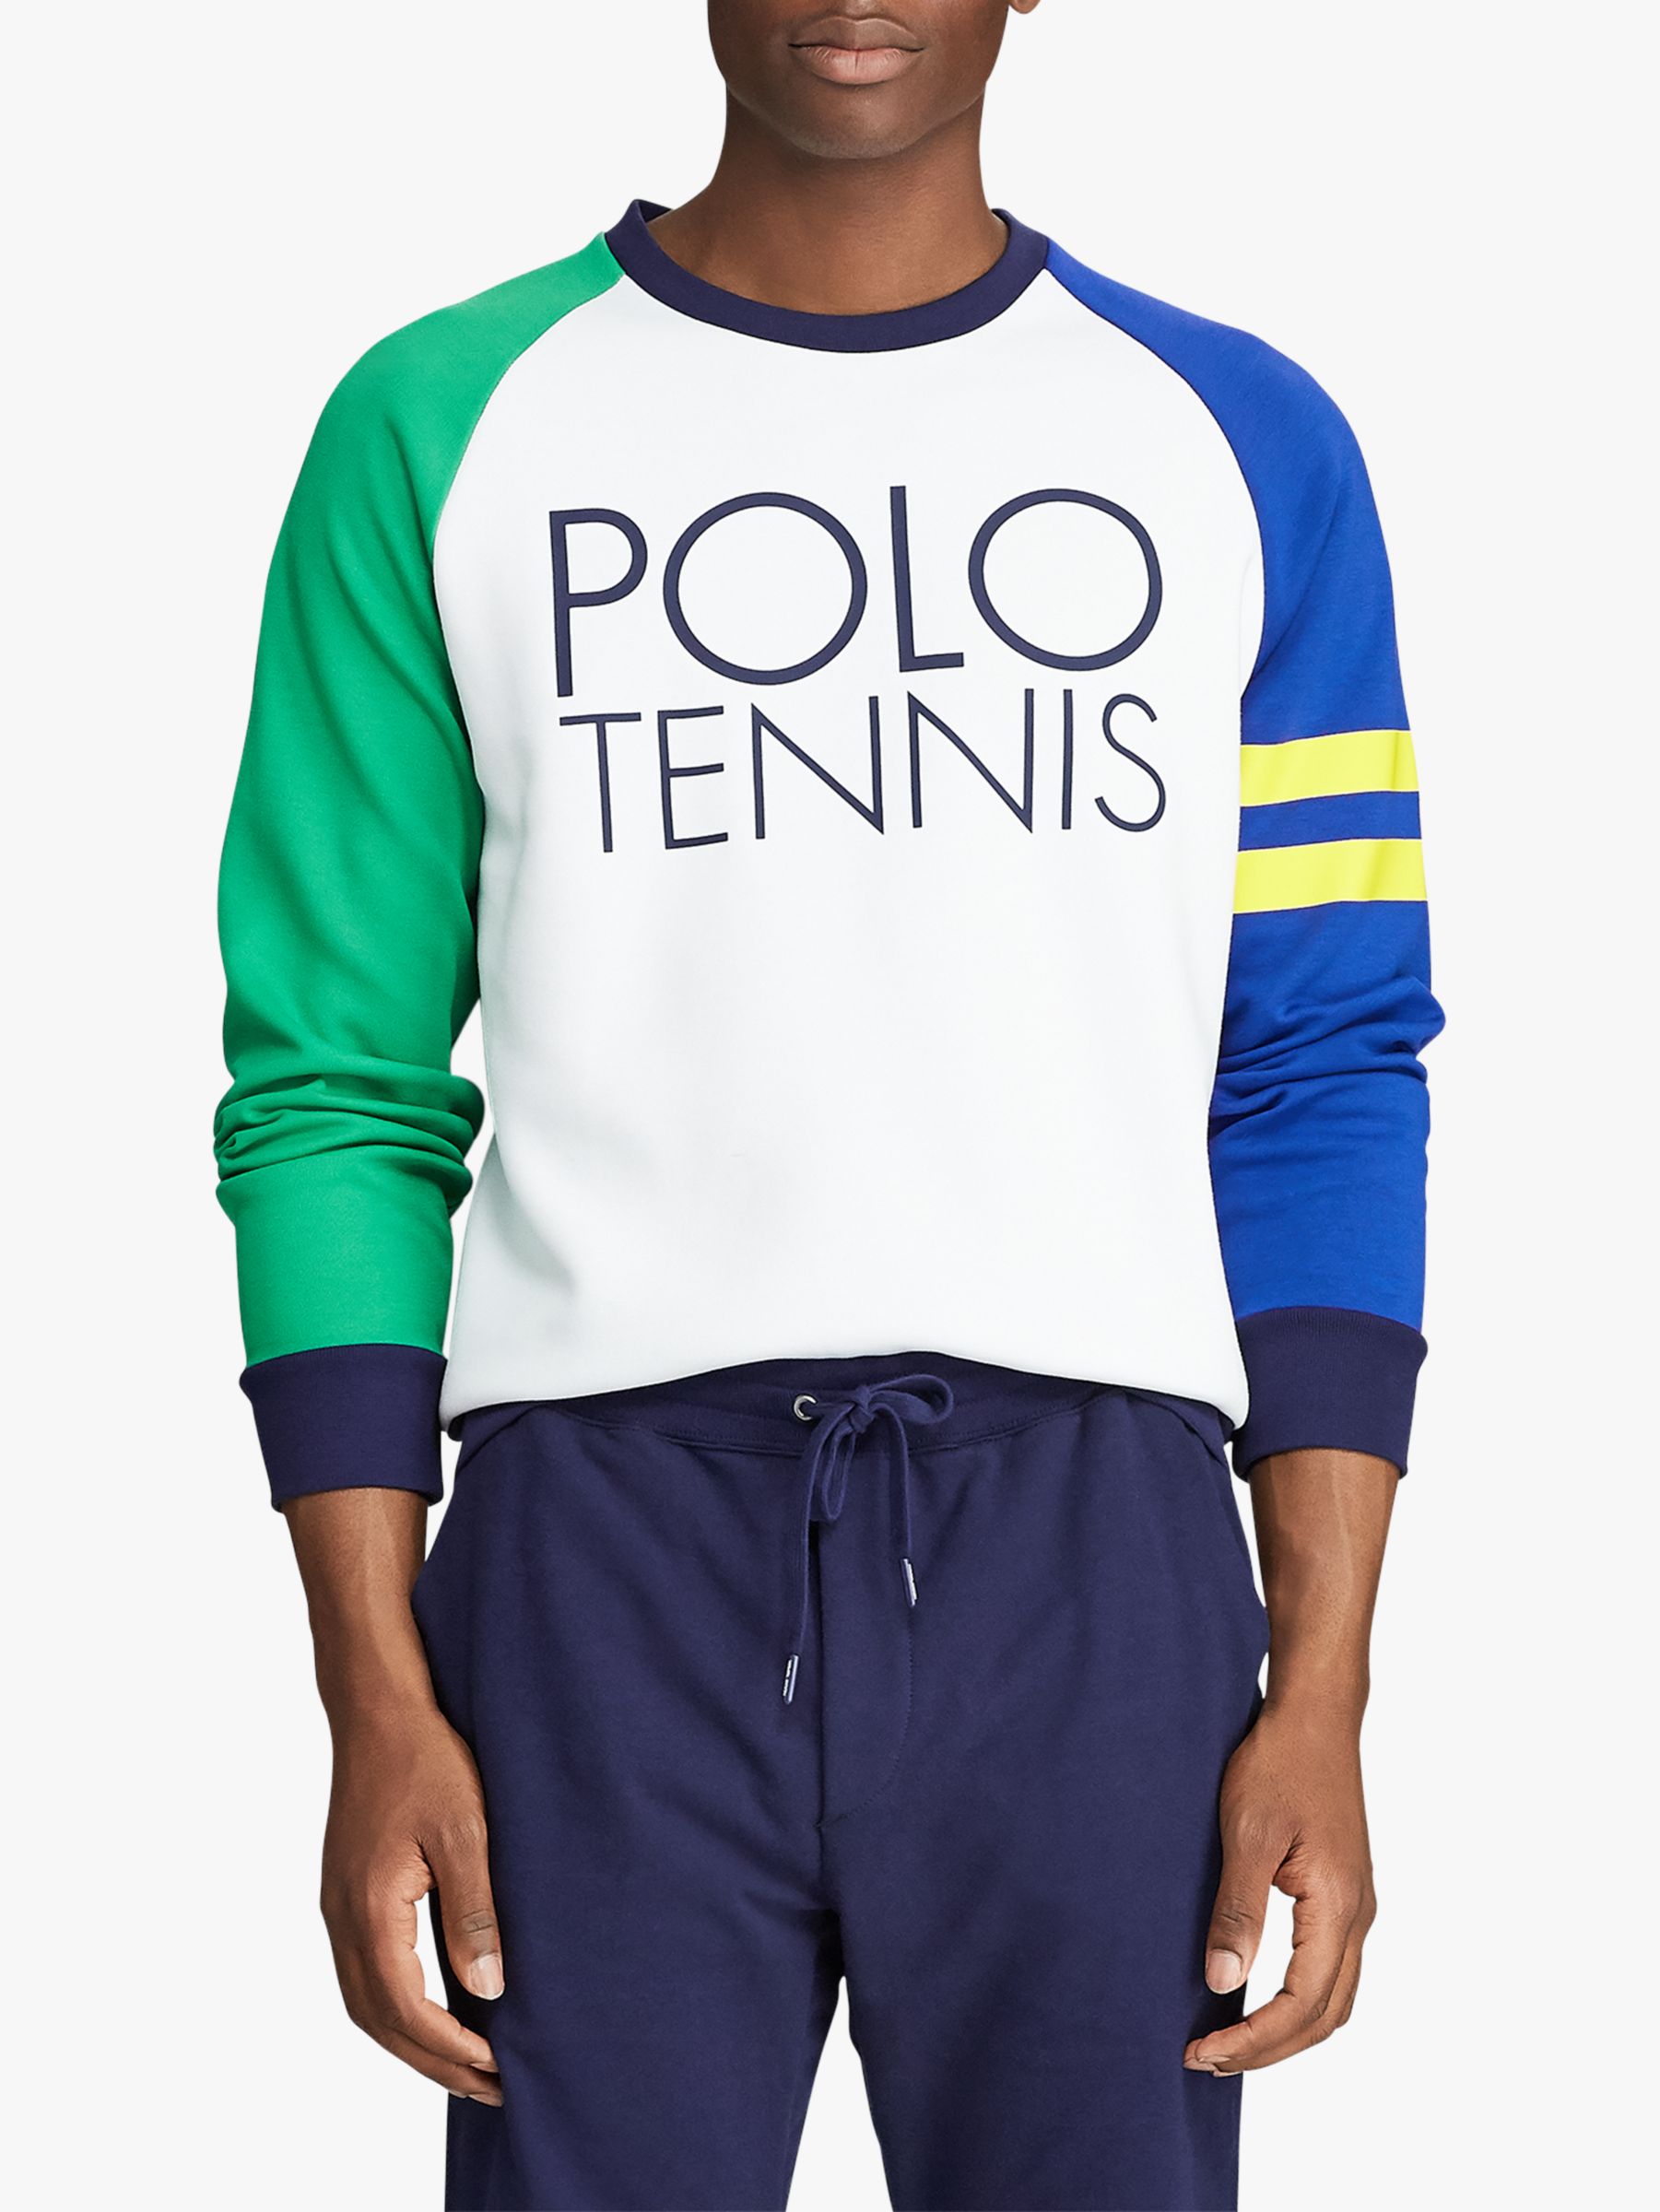 polo tennis ralph lauren